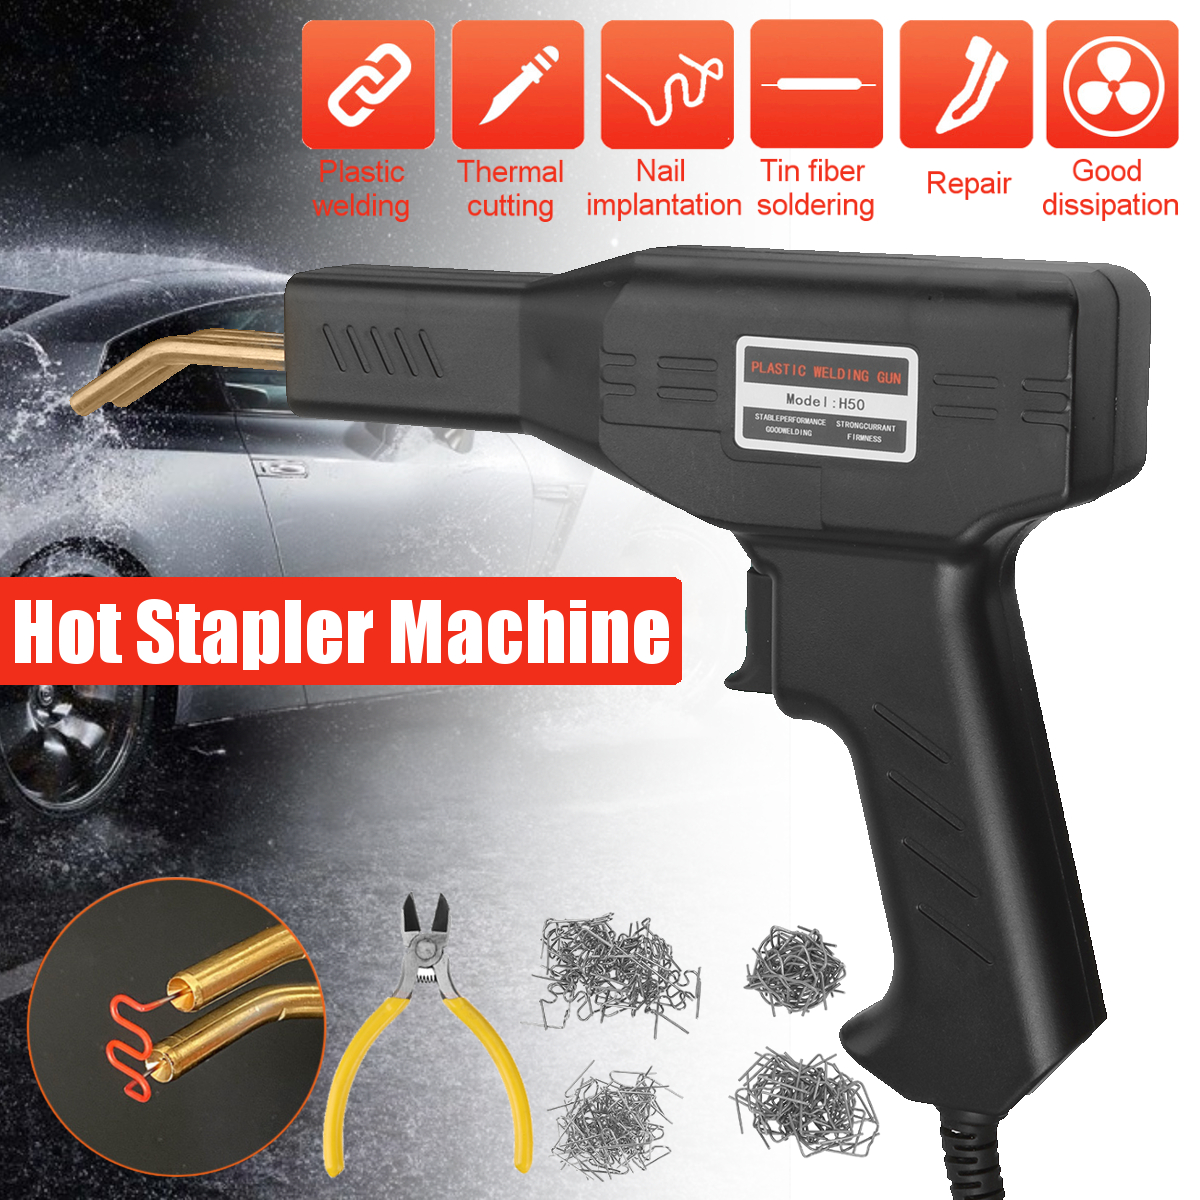 Plastic-Welding-Machine-Car-Bumper-Hot-Stapler-Plastic-Welding-Torch-Fairing-Auto-Body-Tool-Repair-S-1848002-2